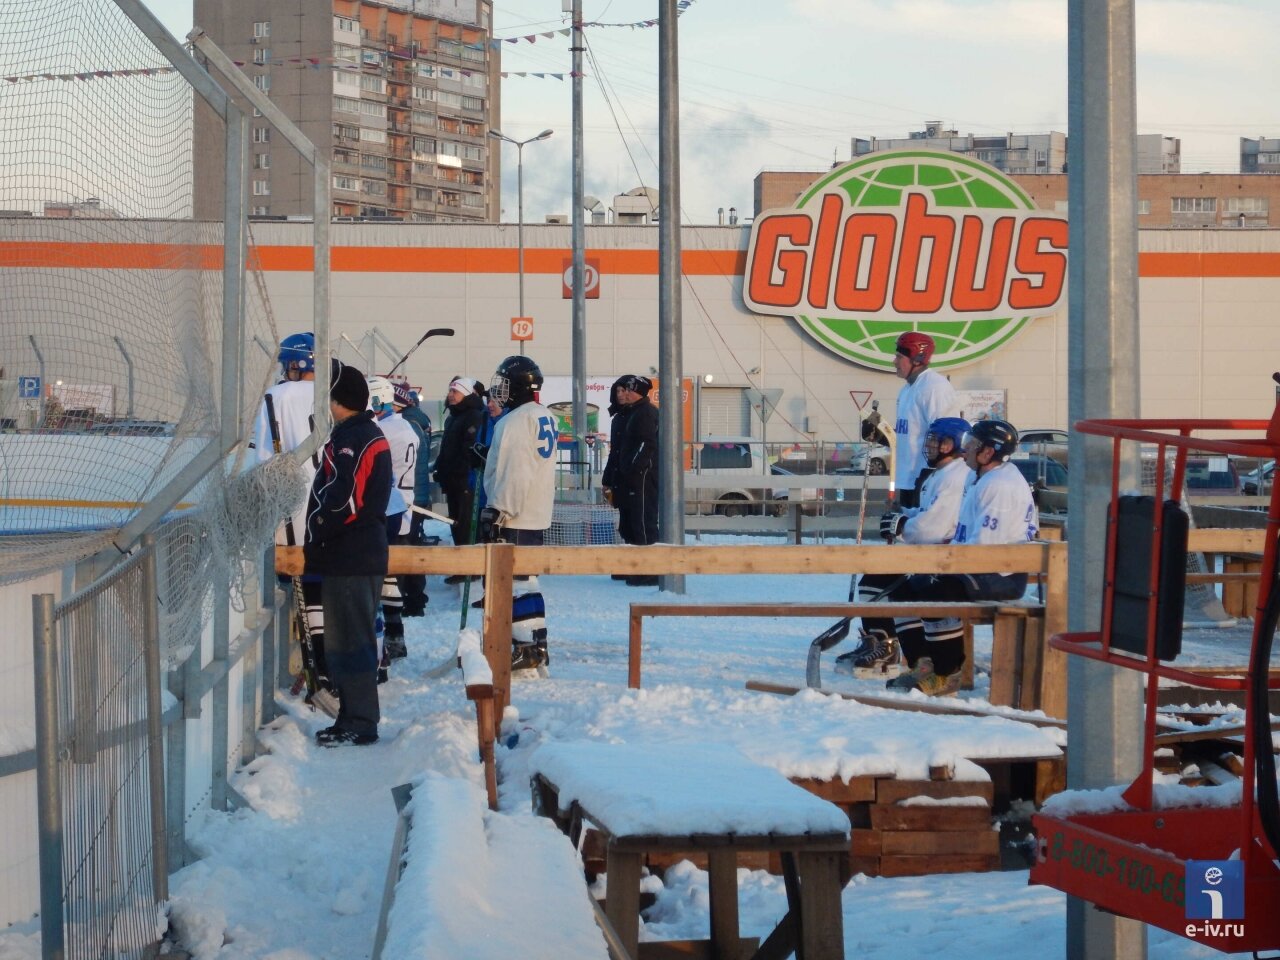 Гипермаркет "Глобус", рядом хоккейная площадка, Пушкино, Московская область